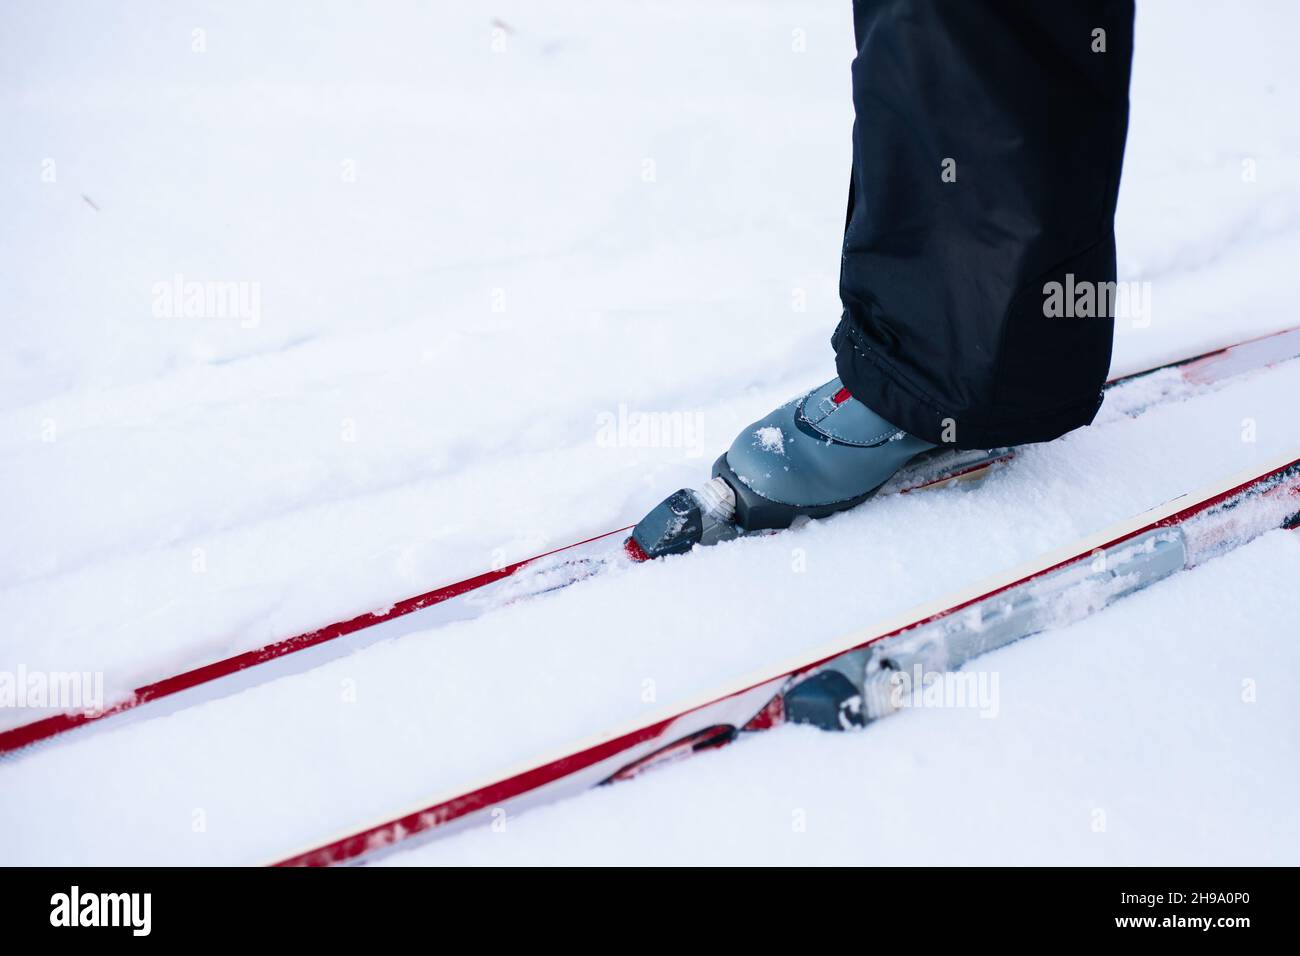 L'homme est le ski.Gros plan des jambes en bottes de ski grises sur les skis, homme en neige par beau soleil, vue latérale Banque D'Images